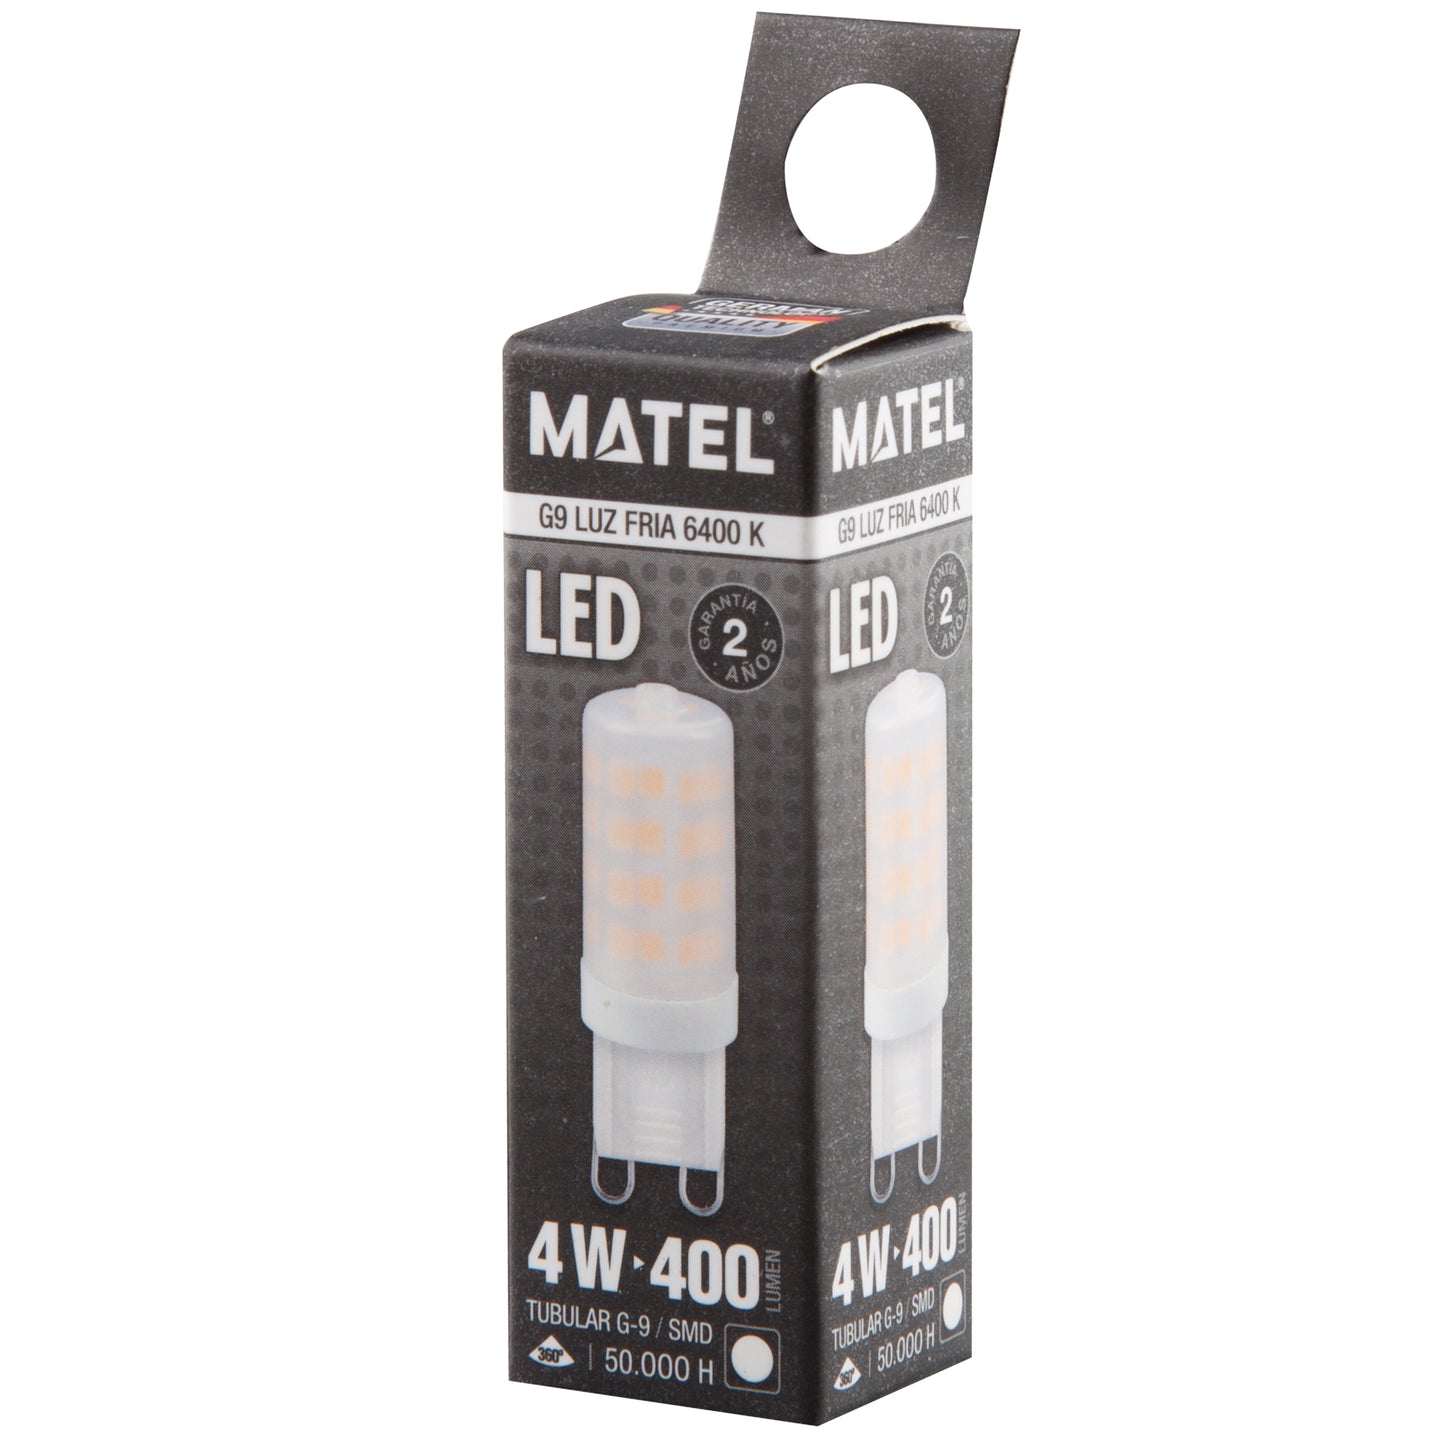 LAMPADA LED MATEL G9 ALUMINIO PC 360º 4W